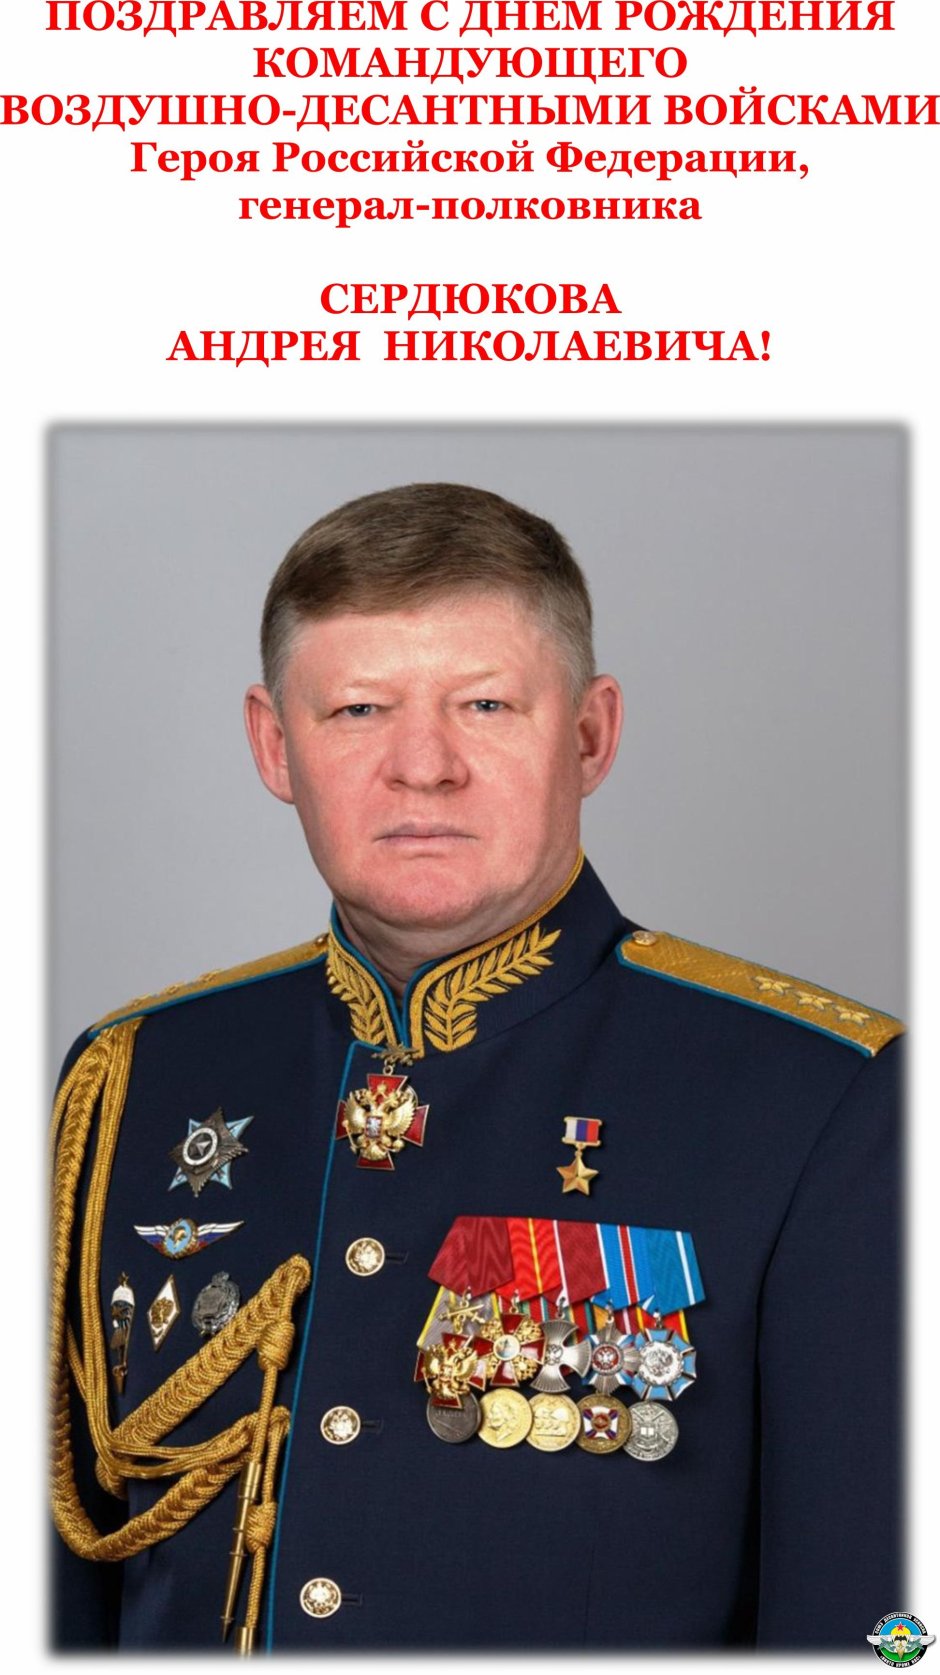 Сердюков Андрей Николаевич командующий воздушно-десантными